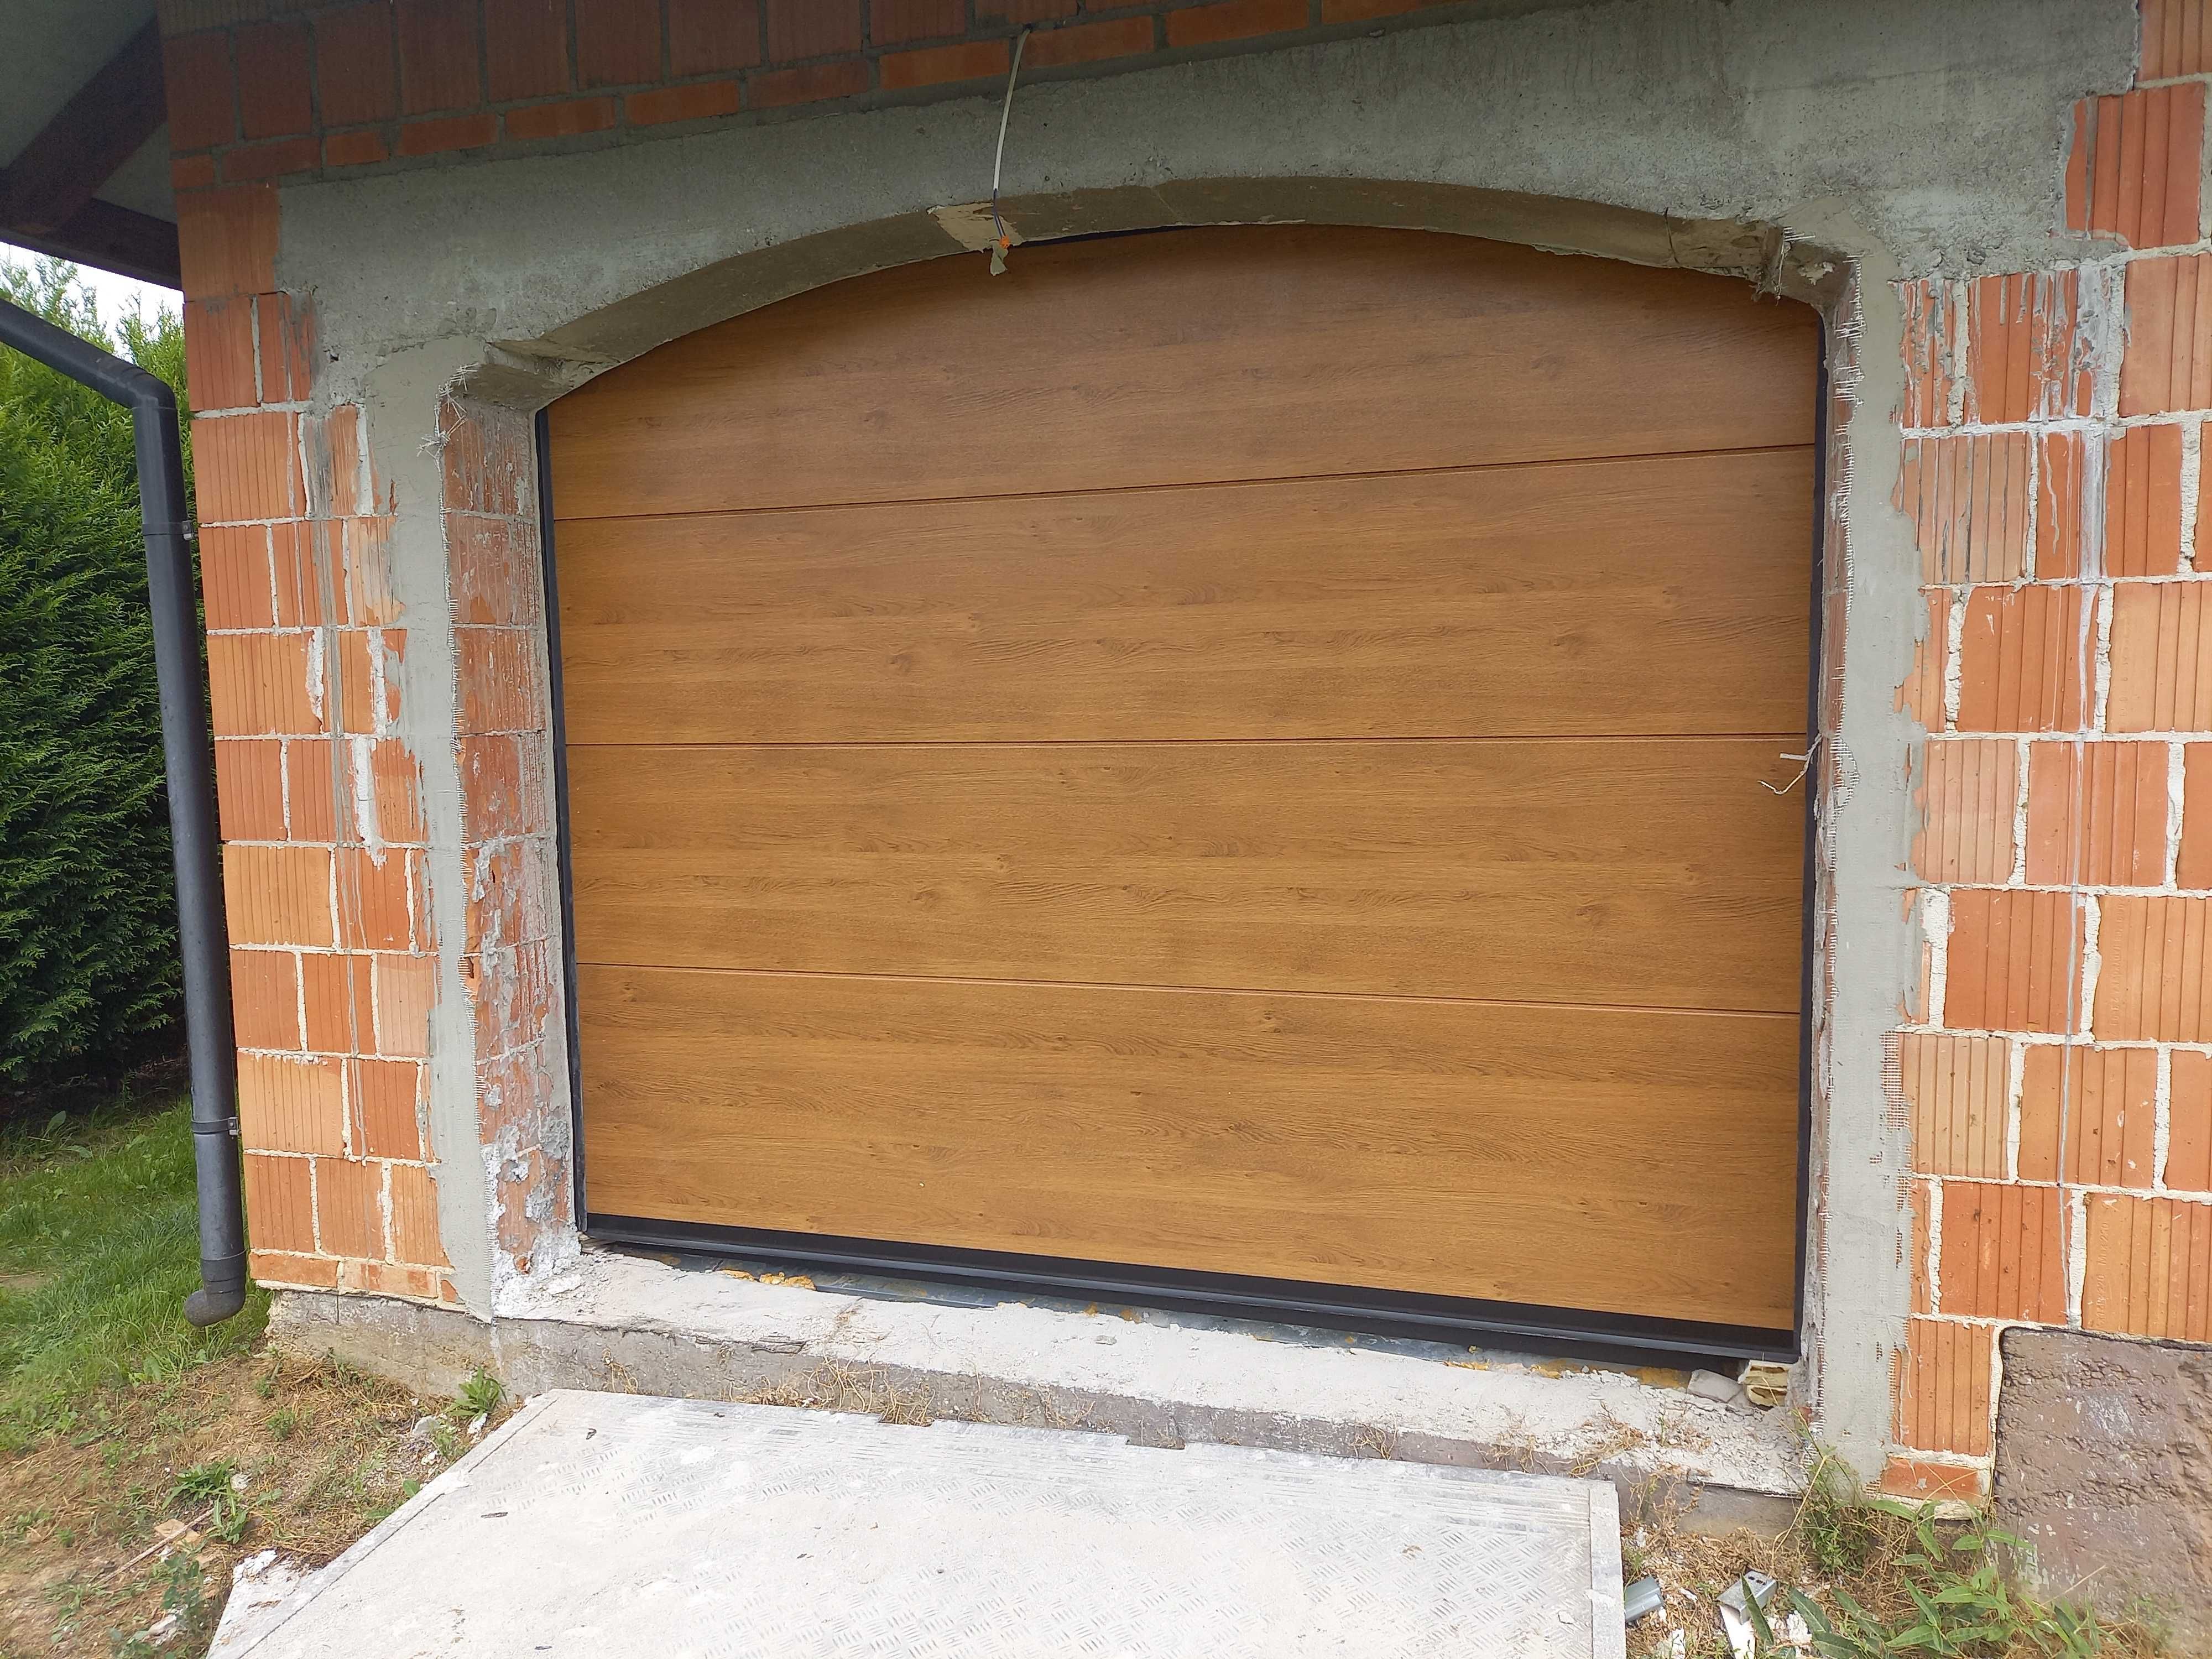 PRODUCENT brama segmentowa garażowa przemysłowa bramy garażowe Łęczna